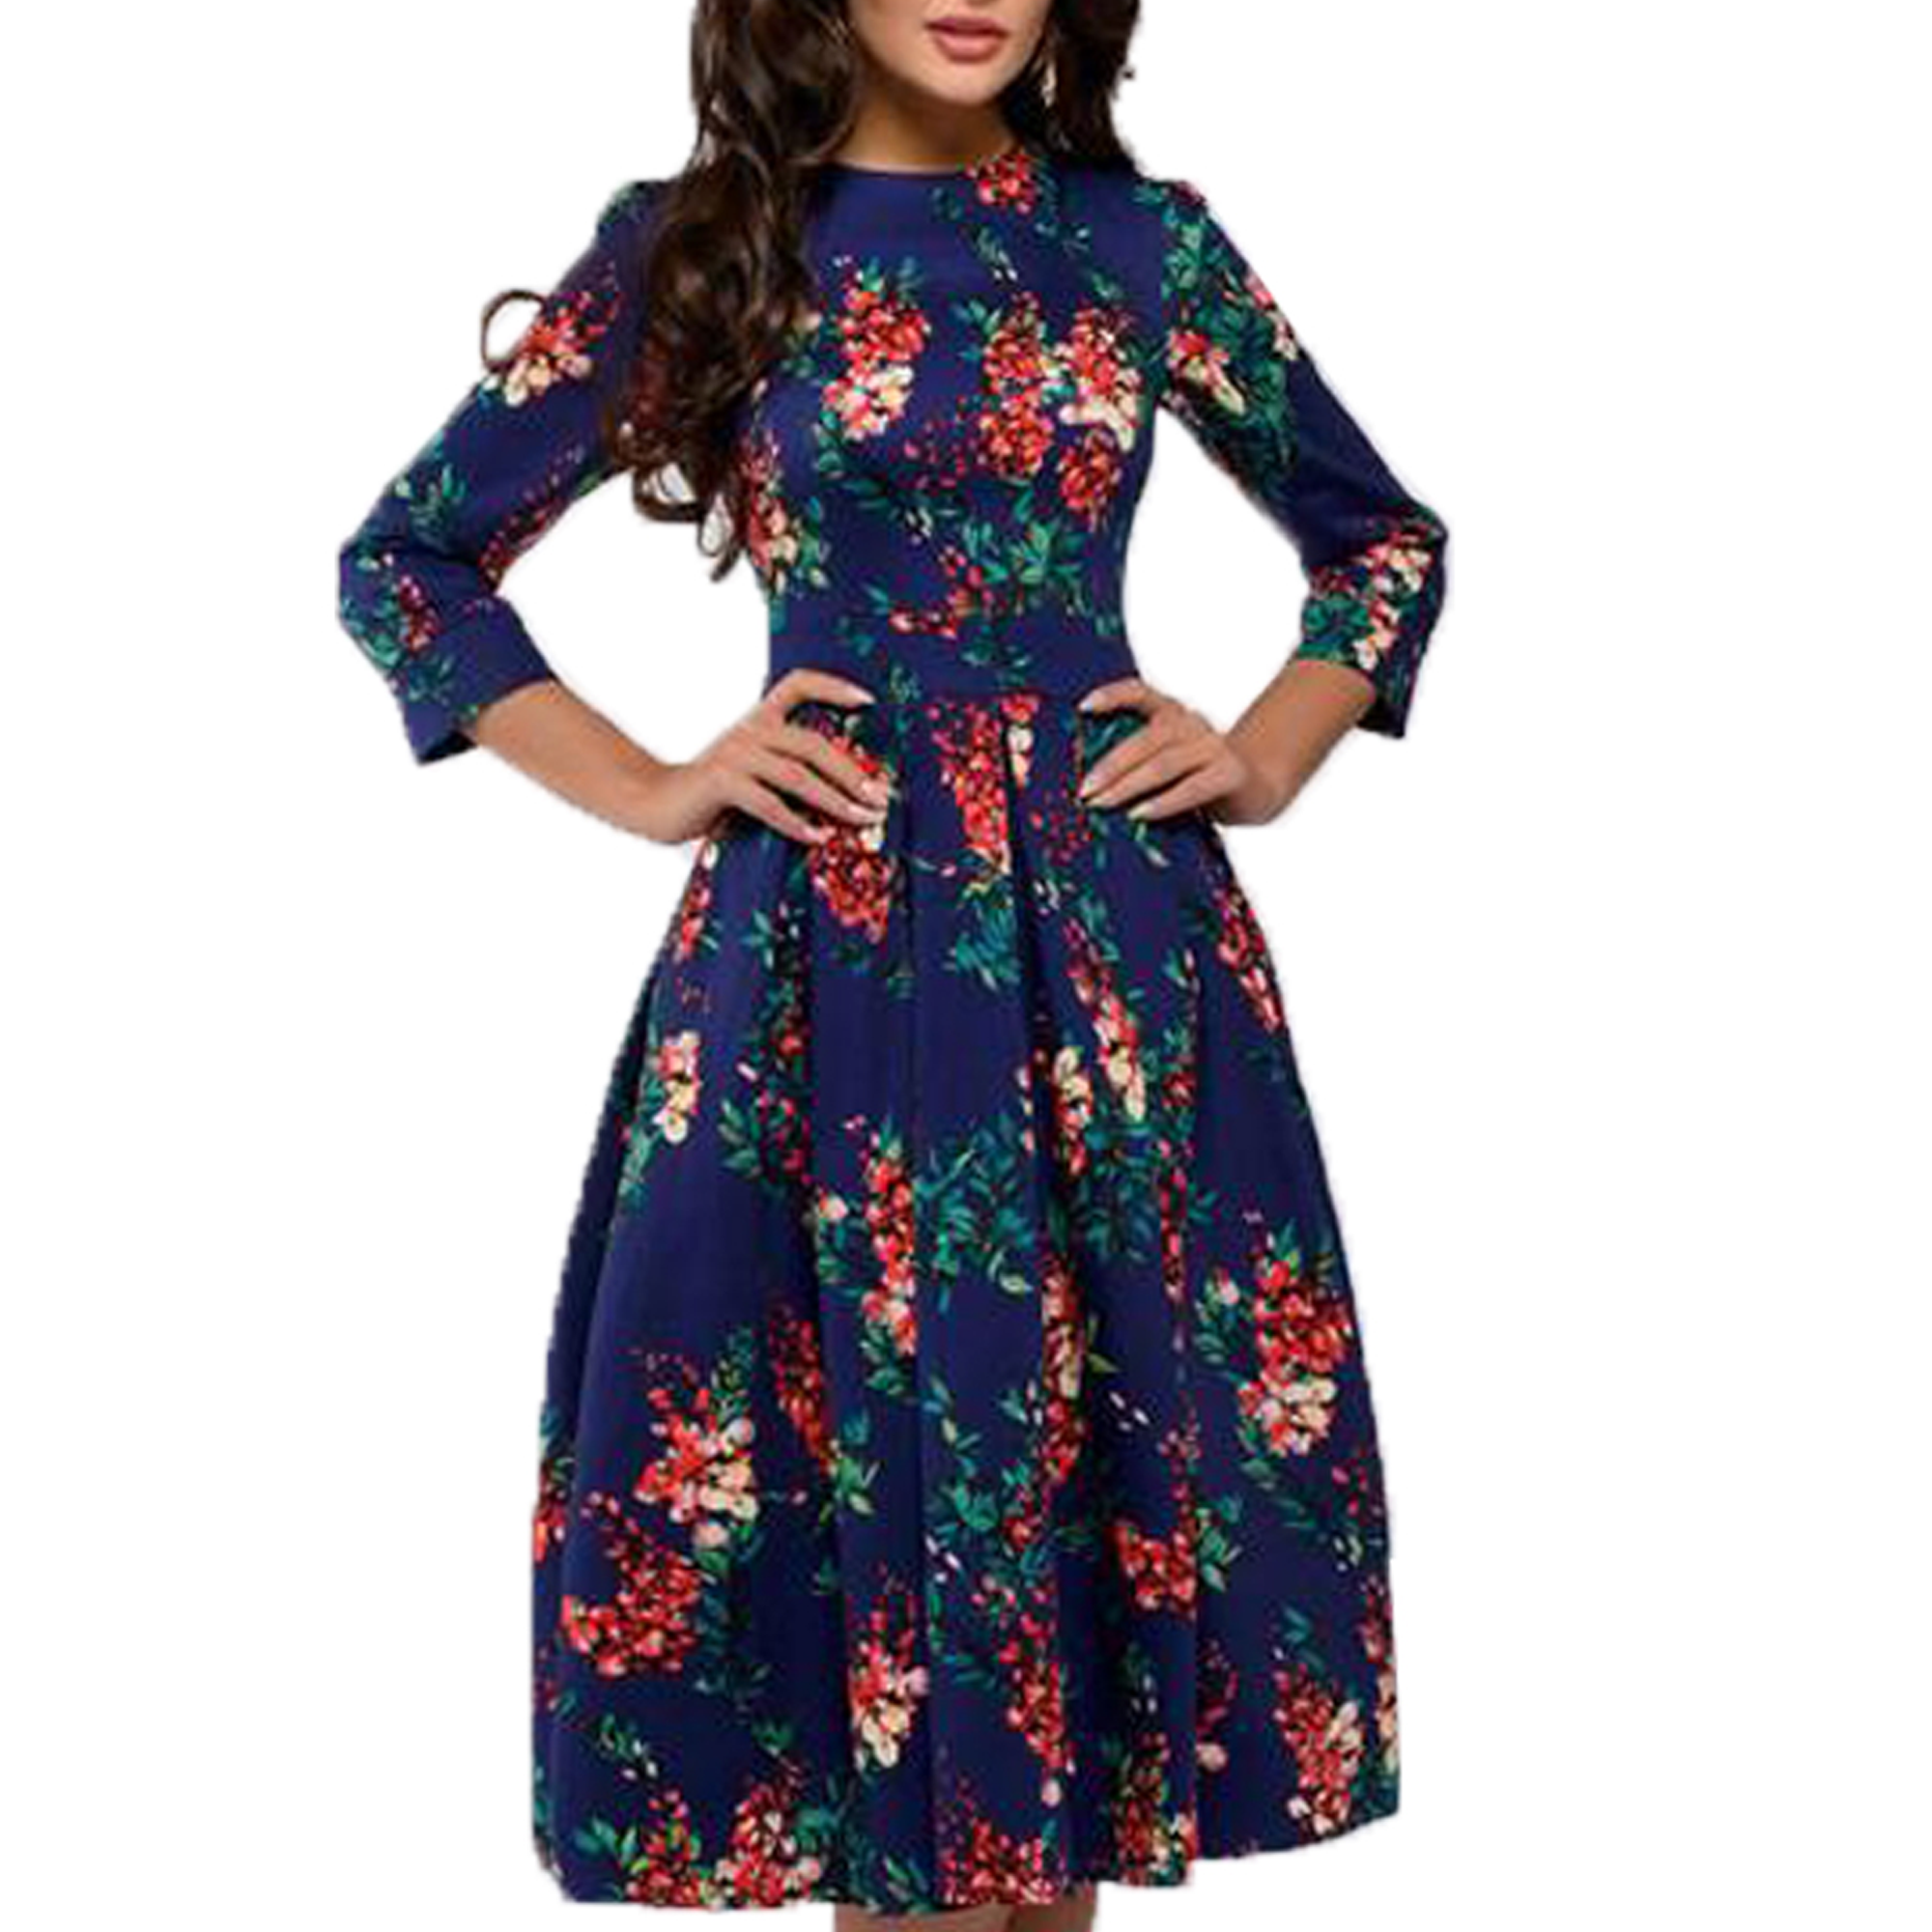 Merqwadd Womens Floral Printed Tunic Flared Midi Dress - Walmart.com